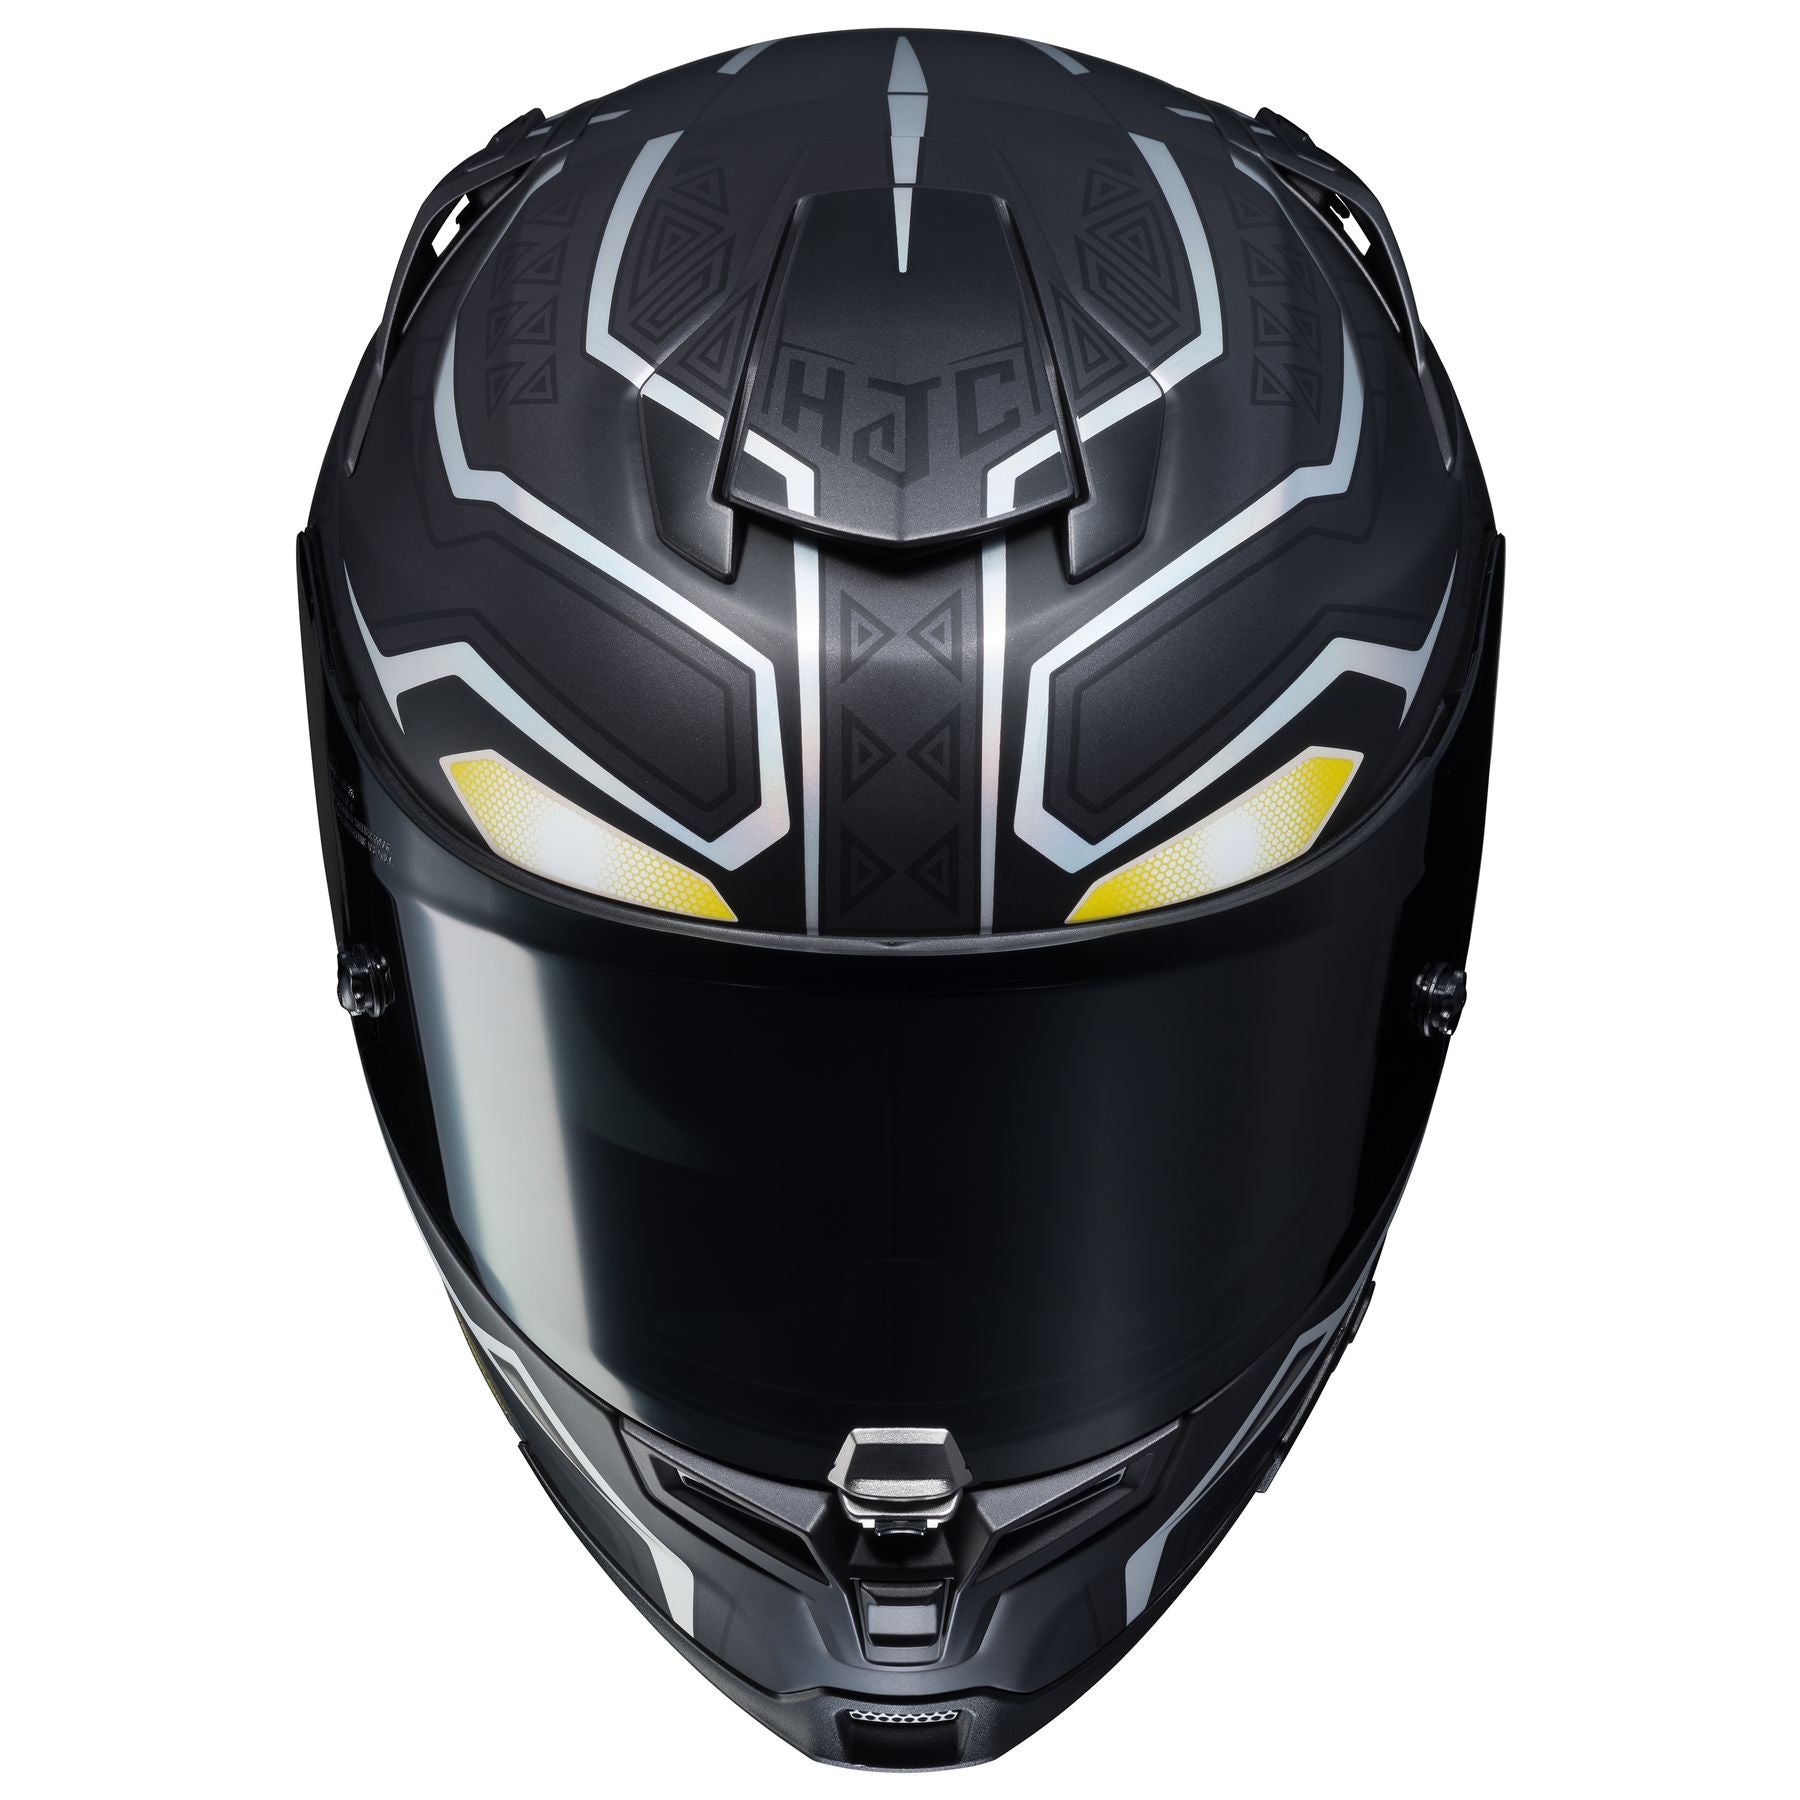 HJC RPHA 70 ST Black Panther Helmet